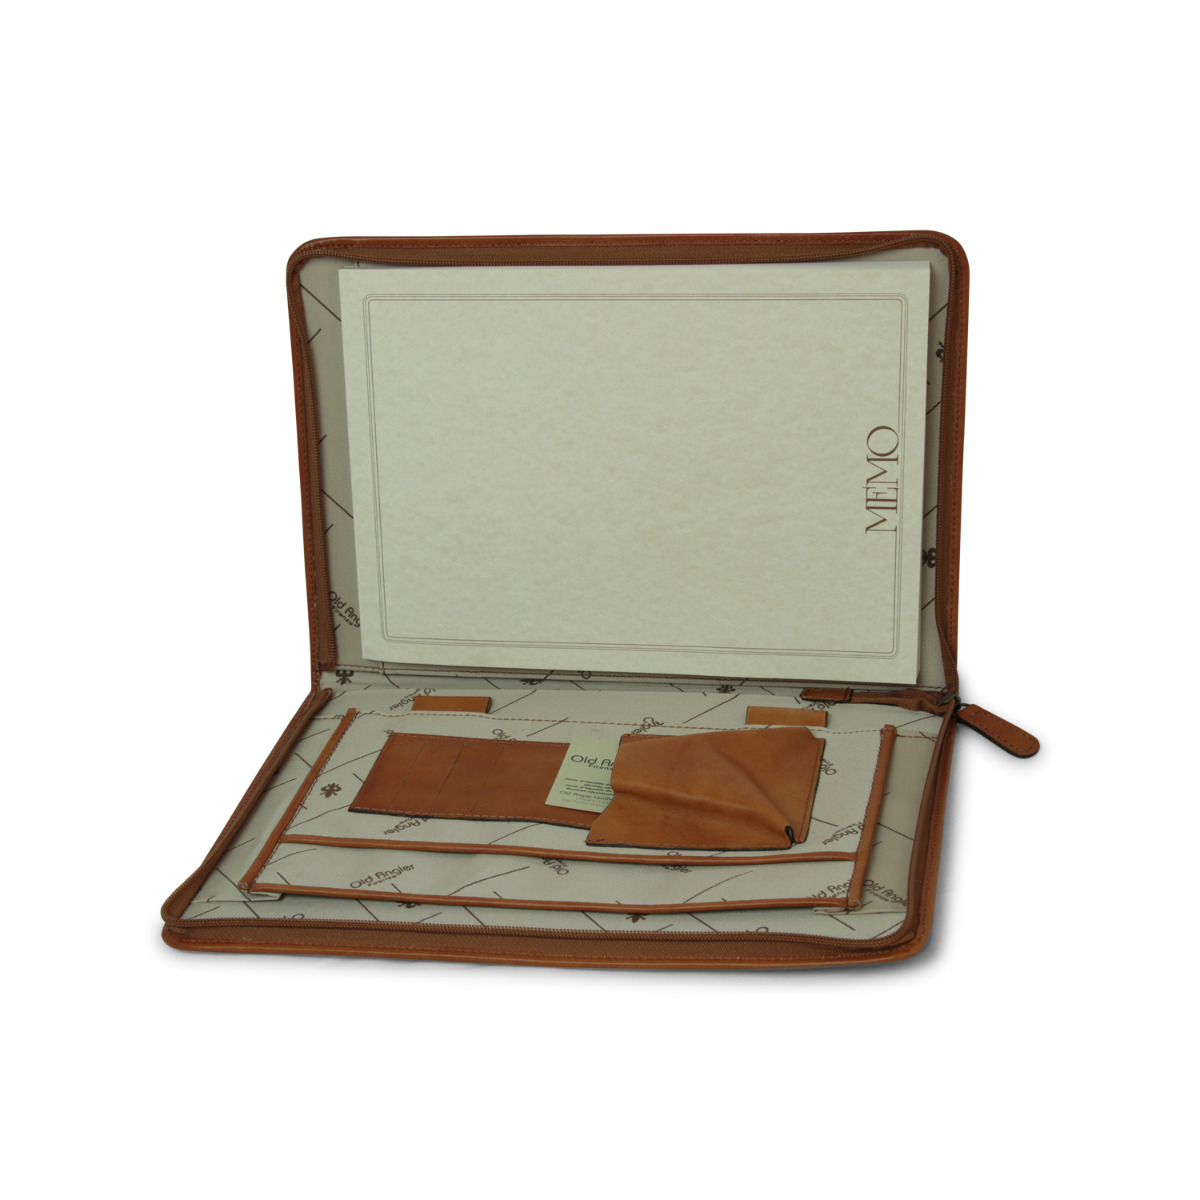 Full grain leather folder - colonial|067589CO|Old Angler Firenze